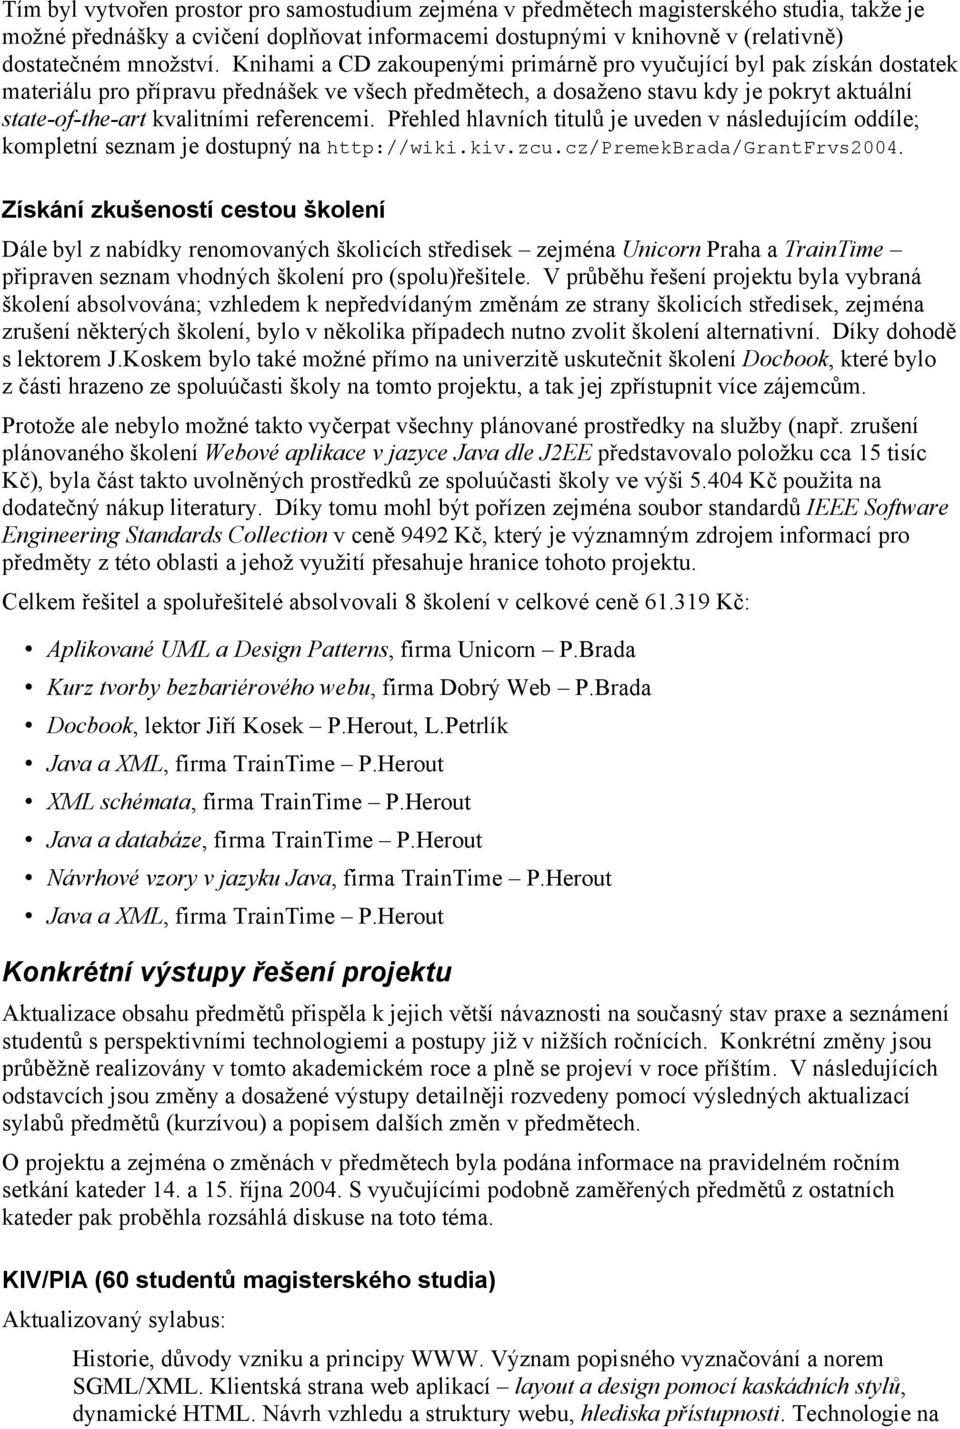 referencemi. Přehled hlavních titulů je uveden v následujícím oddíle; kompletní seznam je dostupný na http://wiki.kiv.zcu.cz/premekbrada/grantfrvs2004.